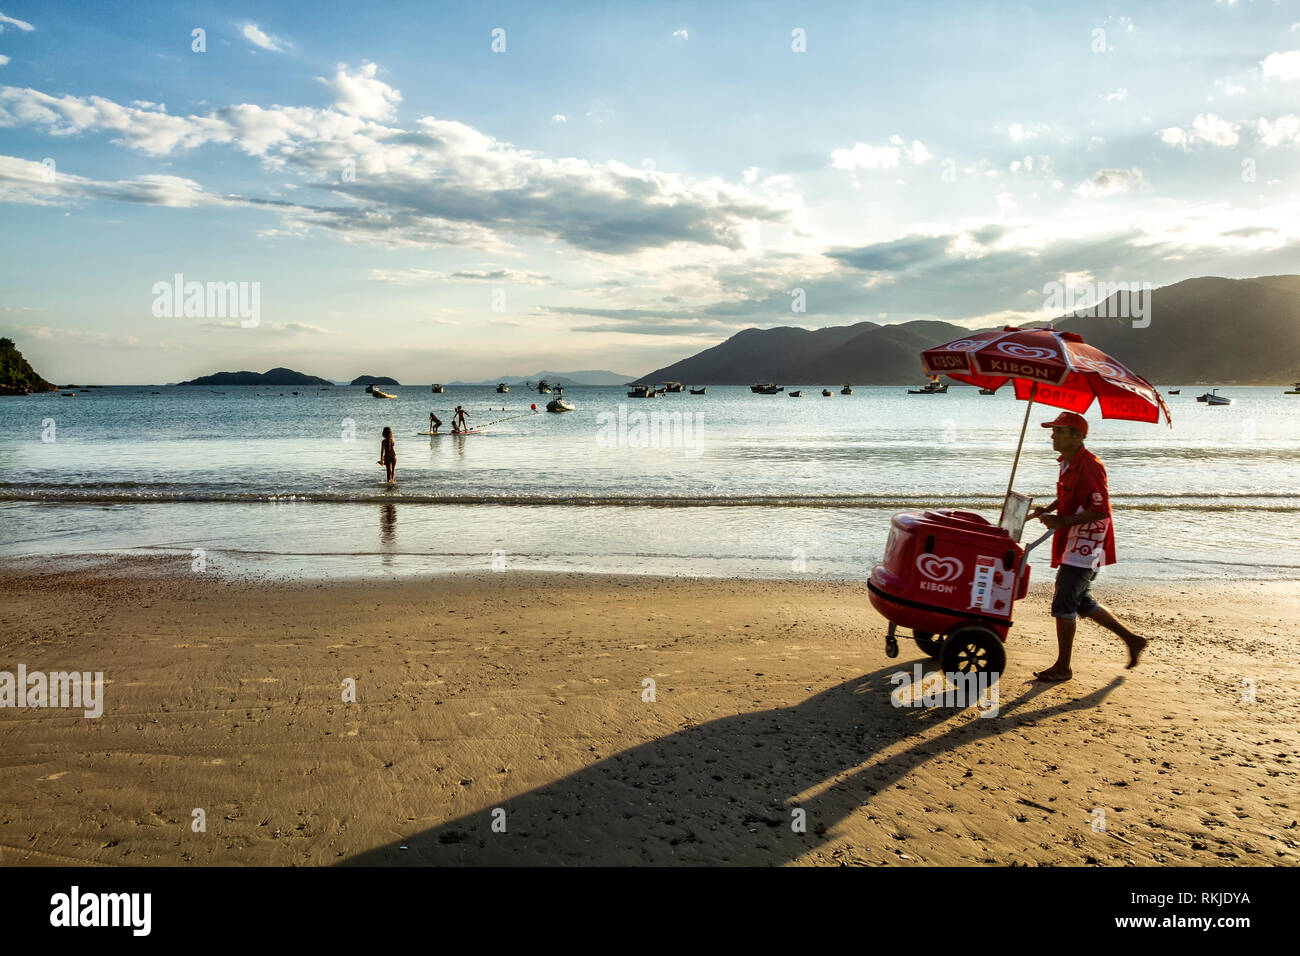 Strandverkäufer, der mit einem Eiswagen am Pantano do Sul Beach spazieren geht. Florianopolis, Santa Catarina, Brasilien. Stockfoto